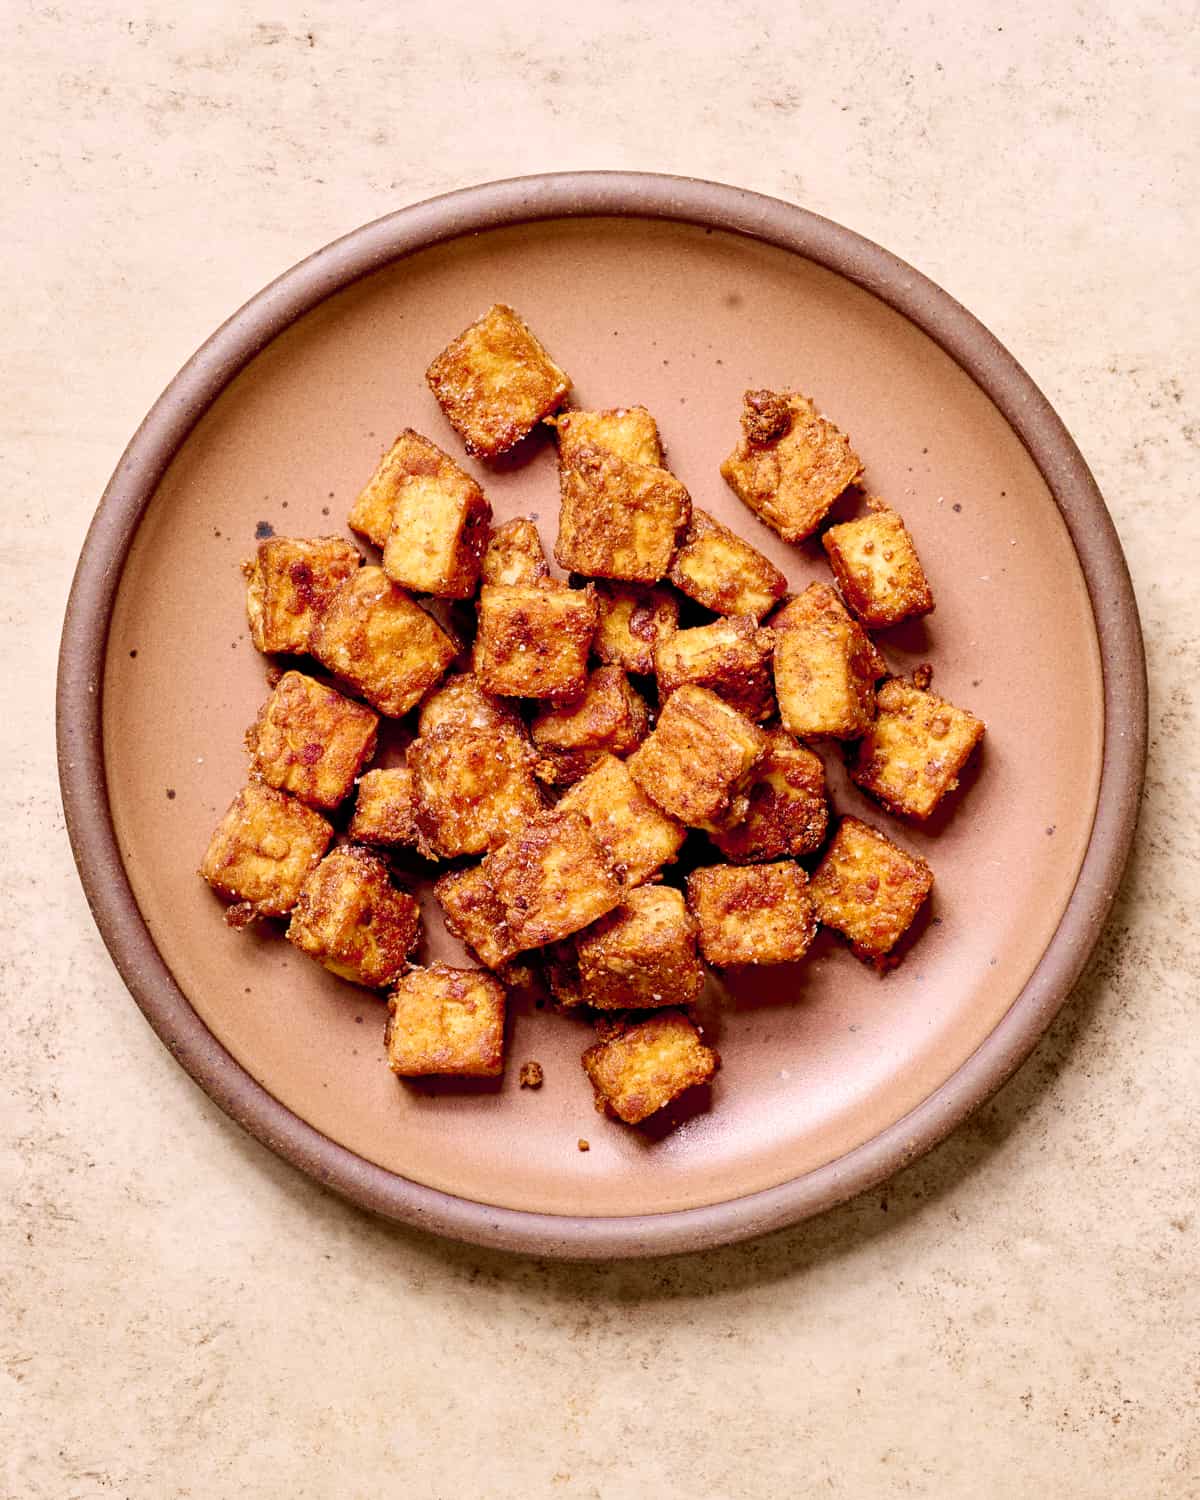 Five Spice fried tofu on a plate.